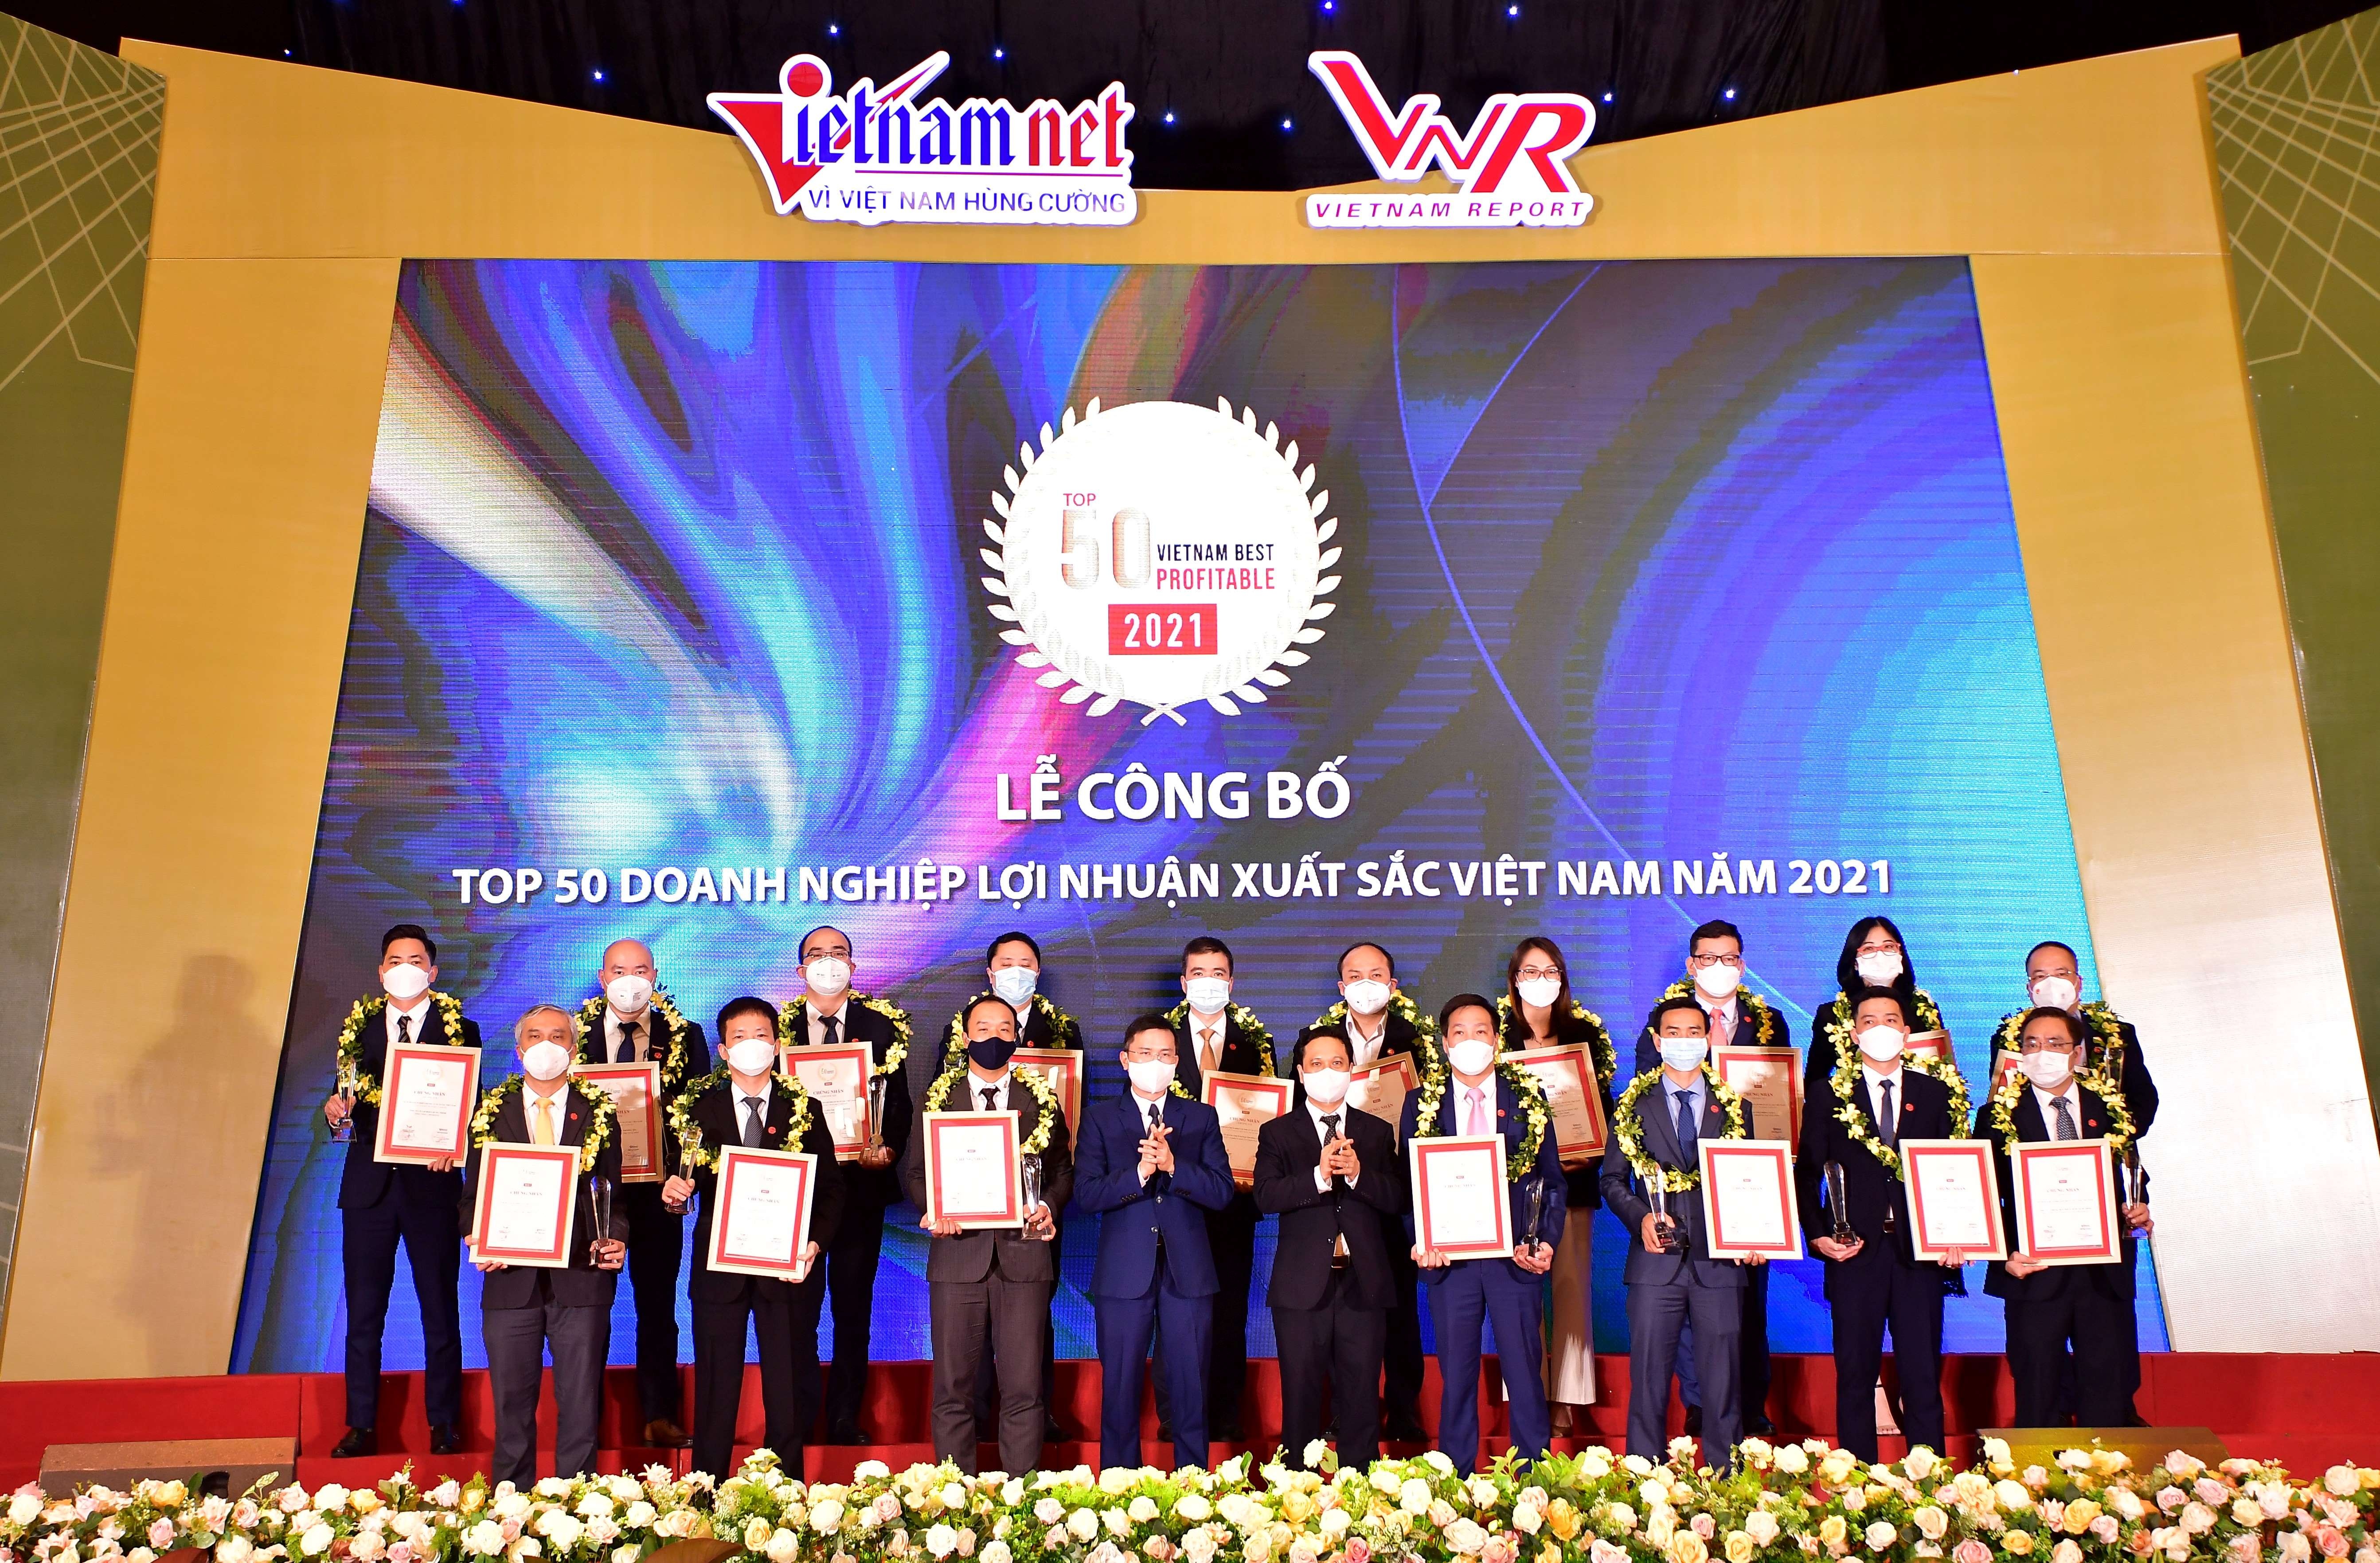 vietcombank dan dau cac ngan hang trong top 500 doanh nghiep co loi nhuan tot